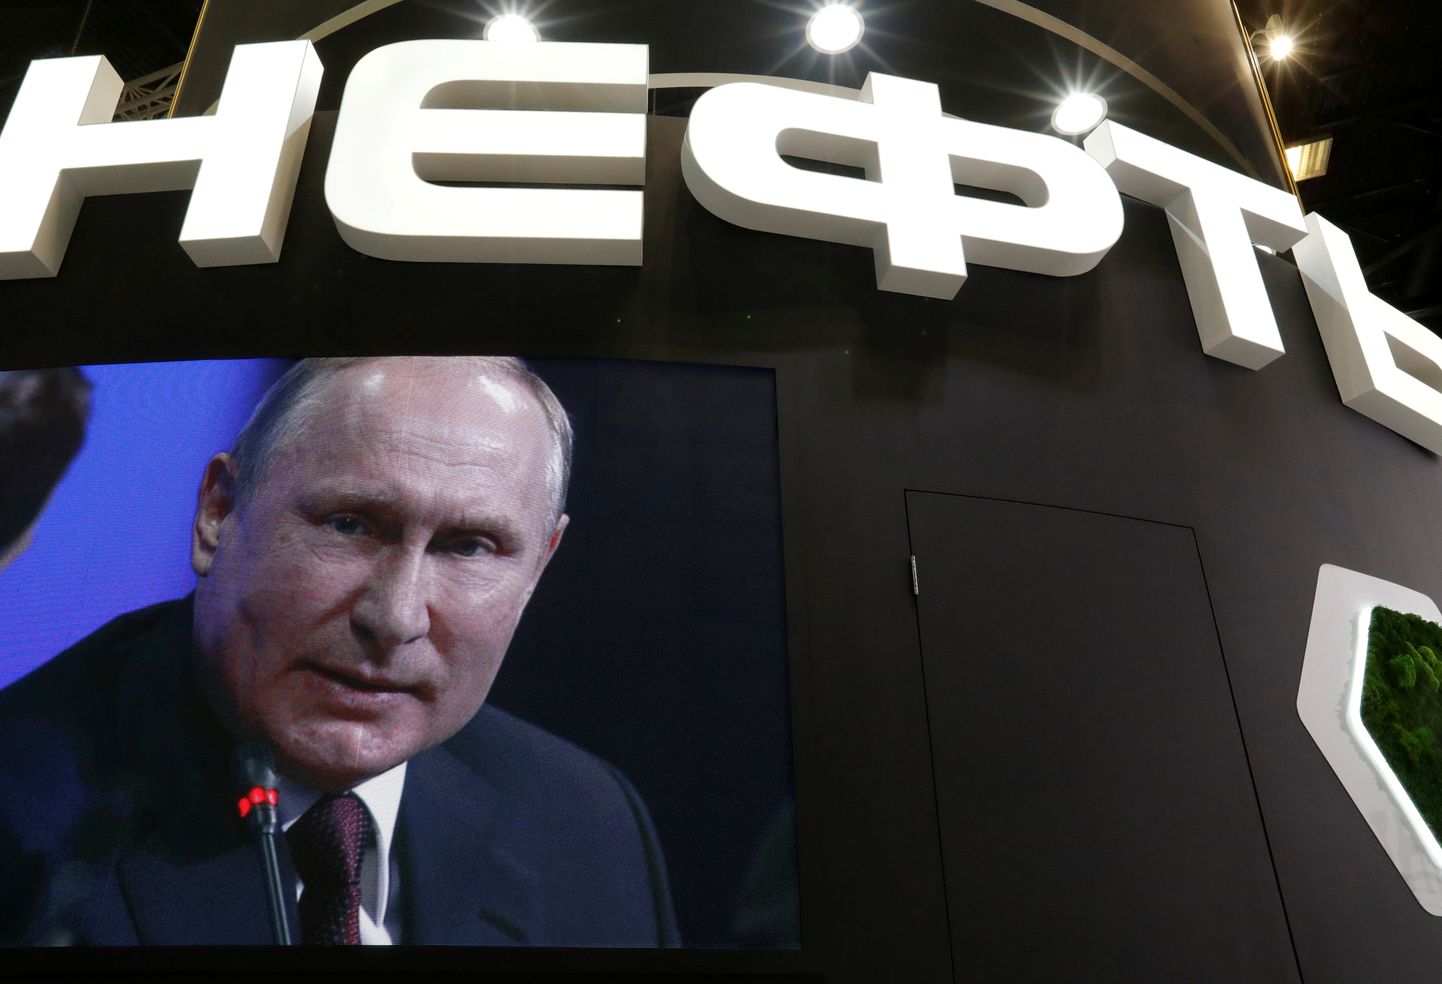 Venemaa president Vladimir Putin rääkimas 25. mail 2018 Rosnefti konverentsil Peterburis, taustaks NAFTA.